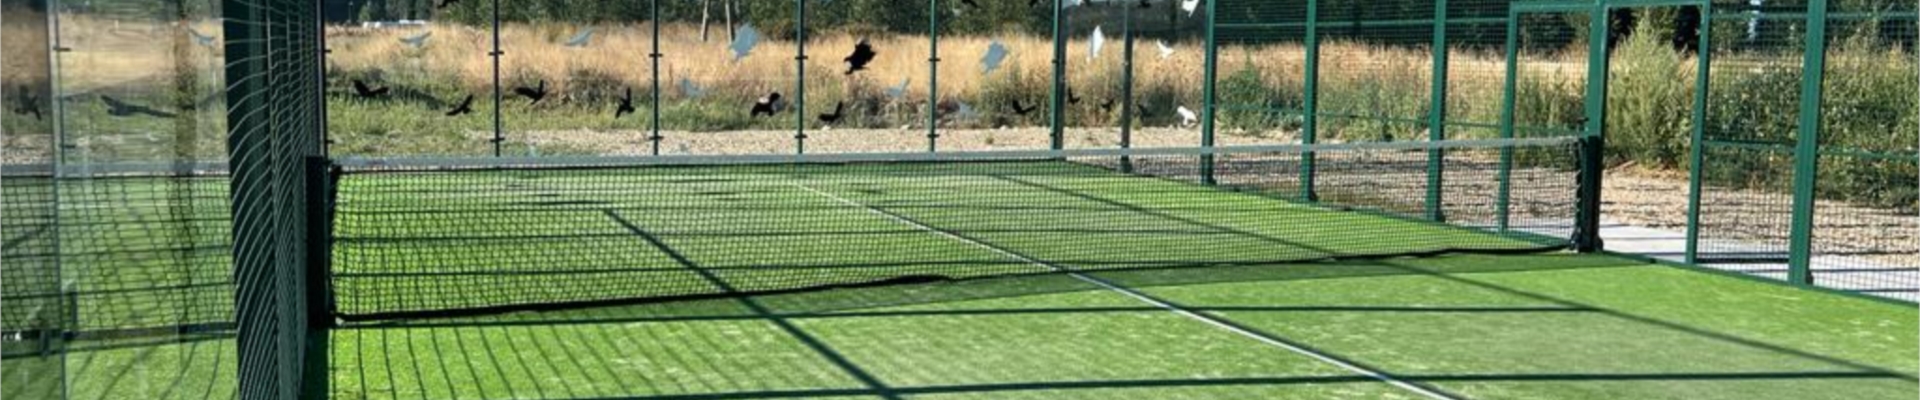 Pistas de tenis y pádel de Alba de Tormes | 07_pista_padel_alba.jpg